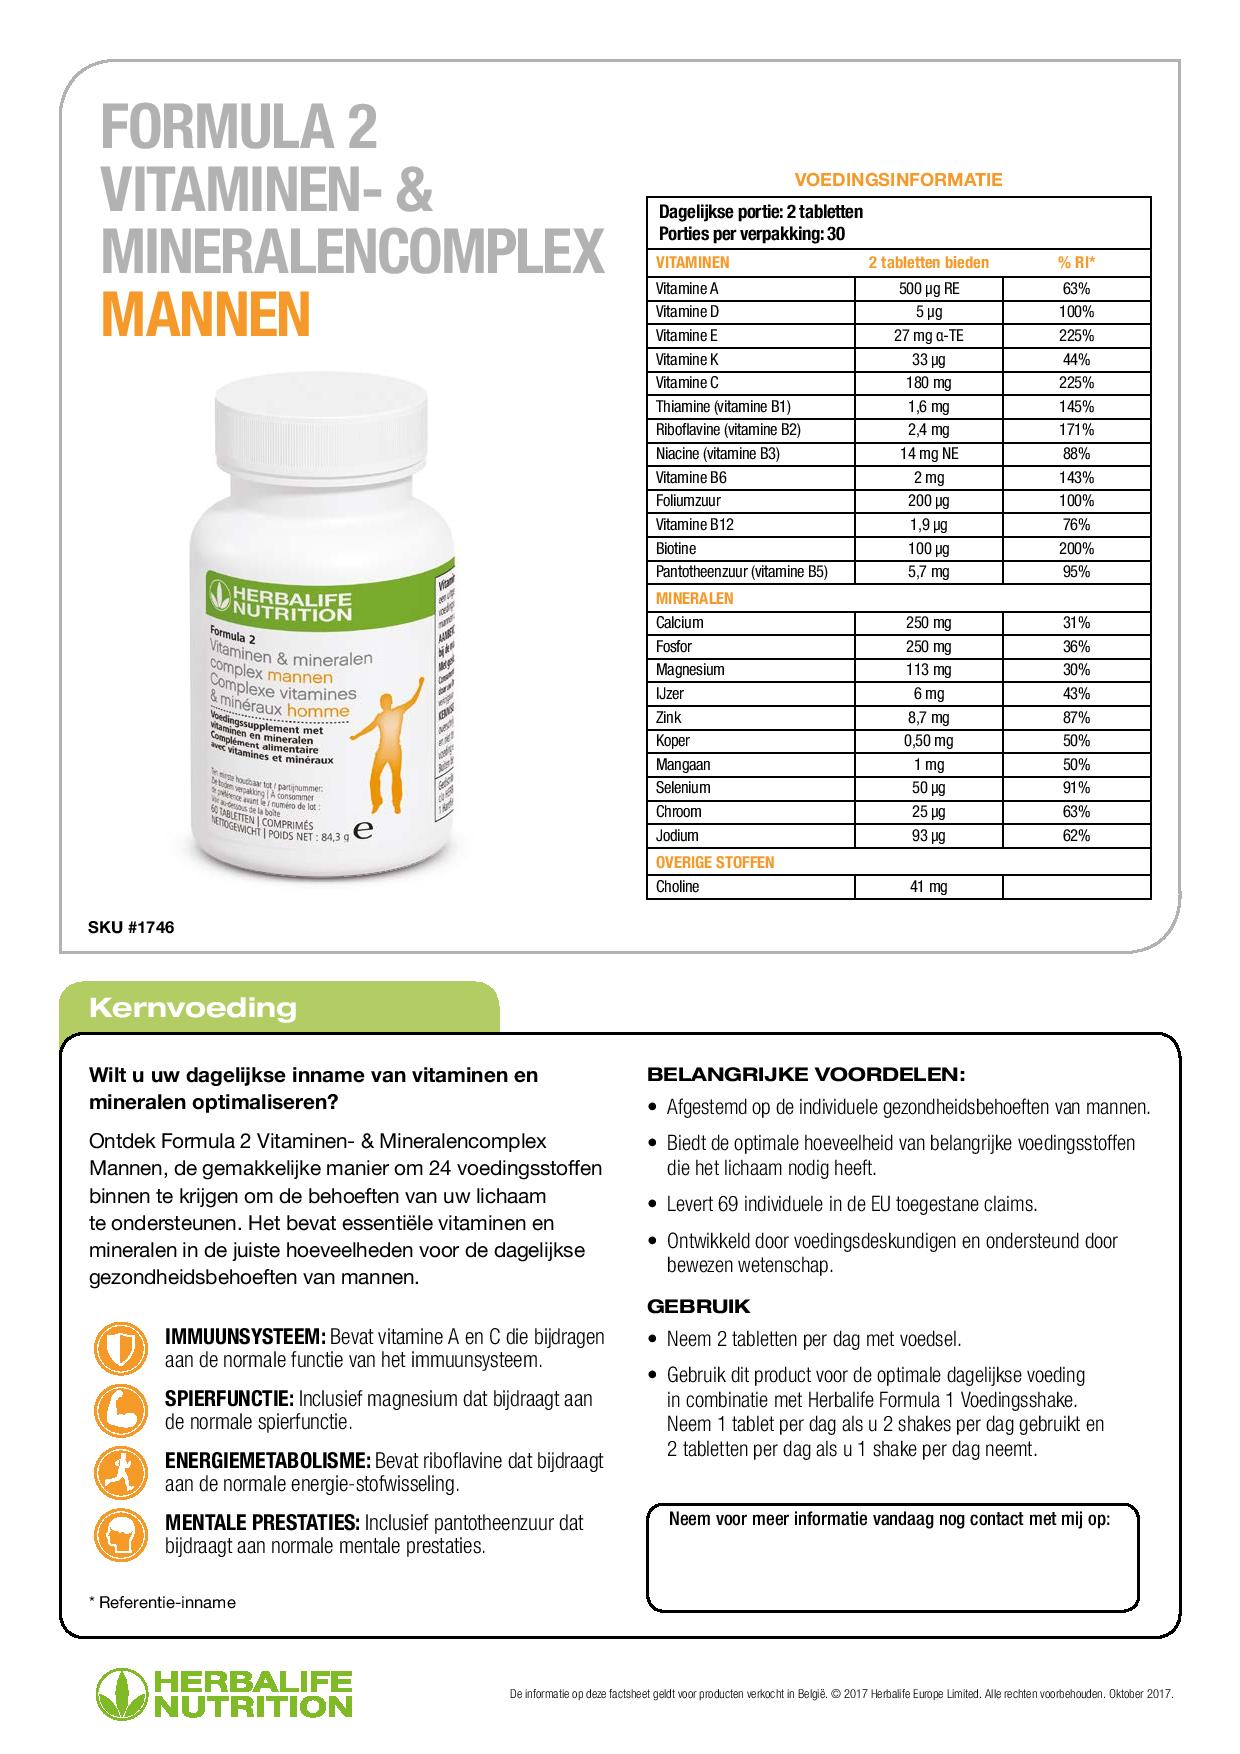 Formula 2 Vitaminen- & Mineralencomplex Vrouwen Ingrediënten